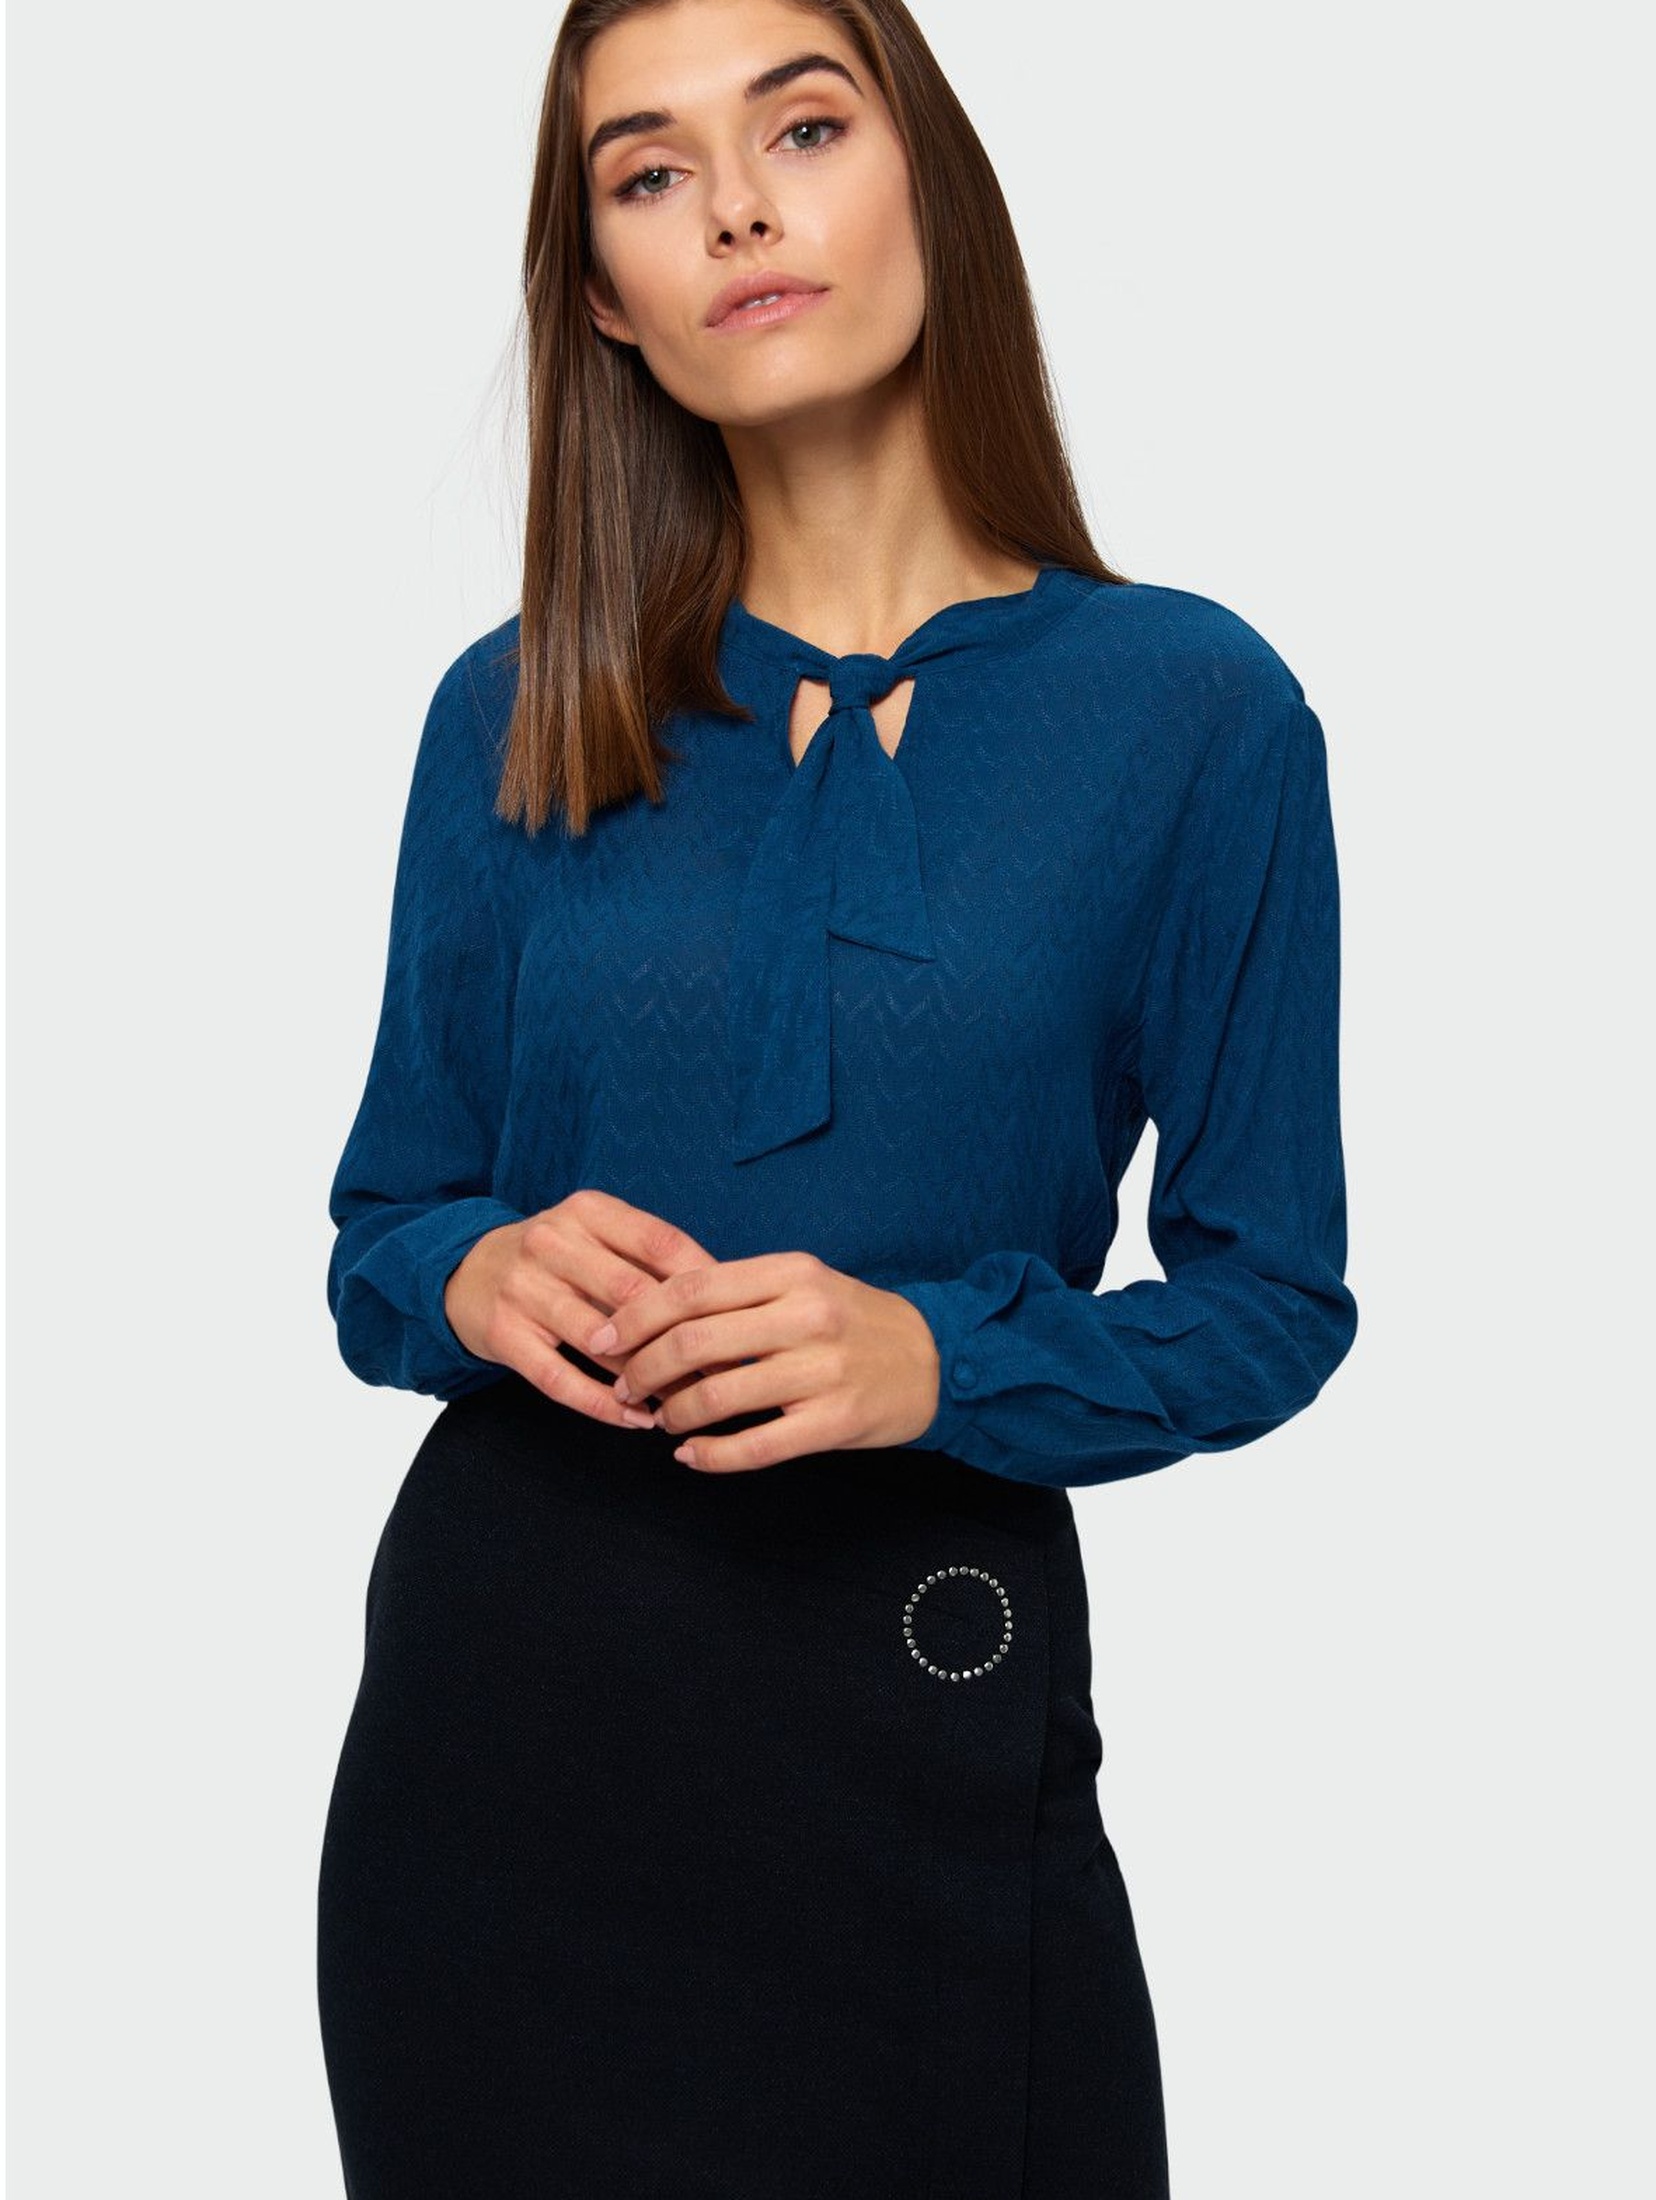 Elegancka bluzka z ozdobnym wiązaniem - niebieska